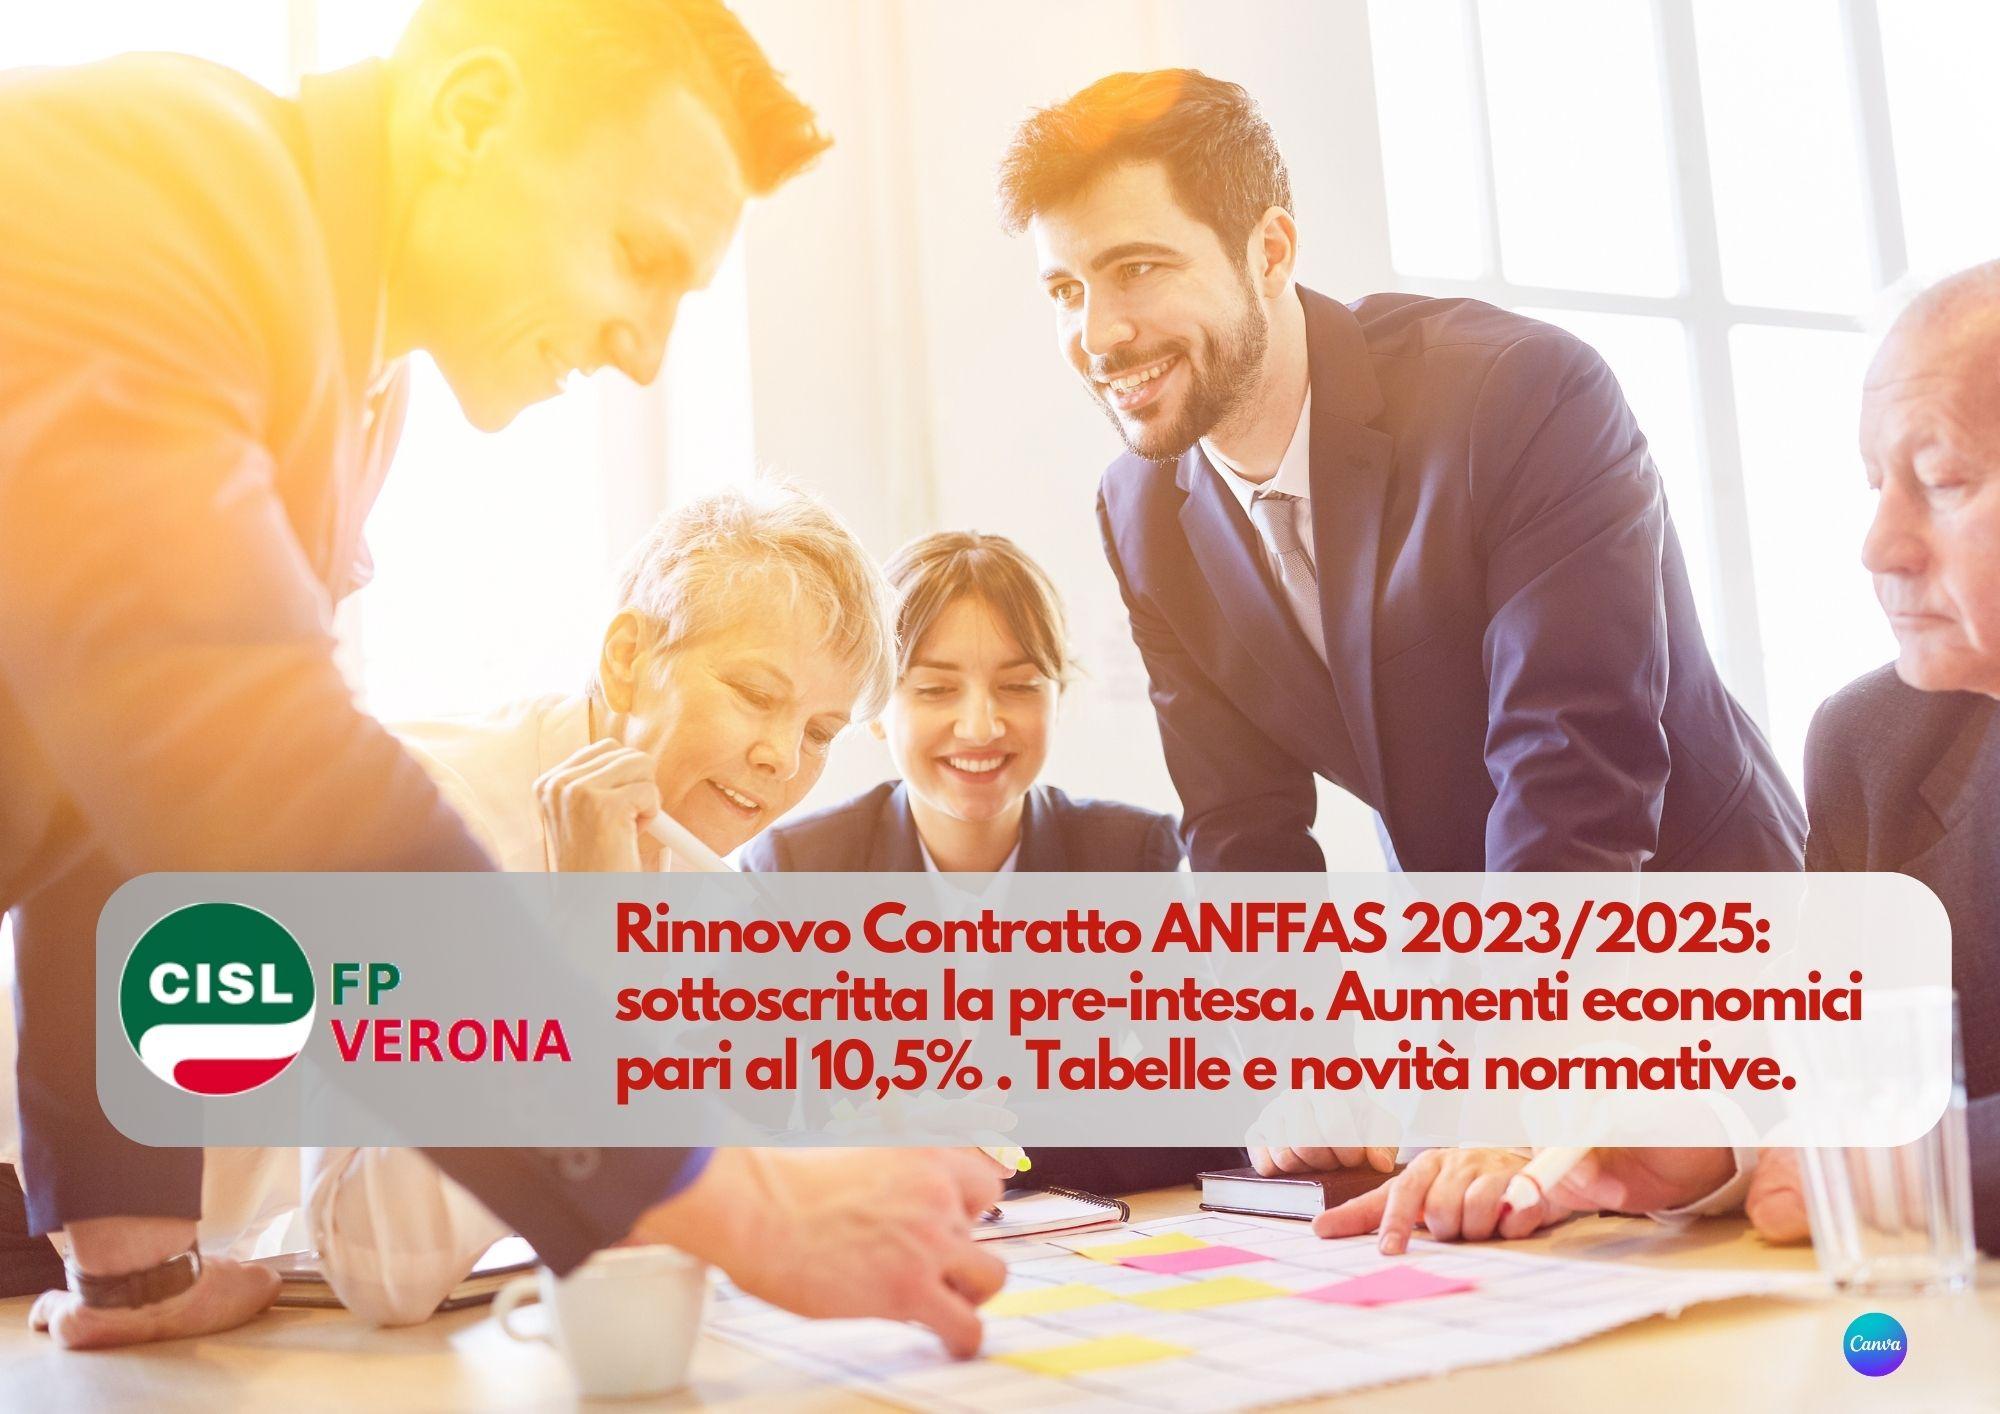 CISL FP Verona. Rinnovo Contratto ANFFAS 2023/2025: sottoscritta la pre-intesa. I dettagli